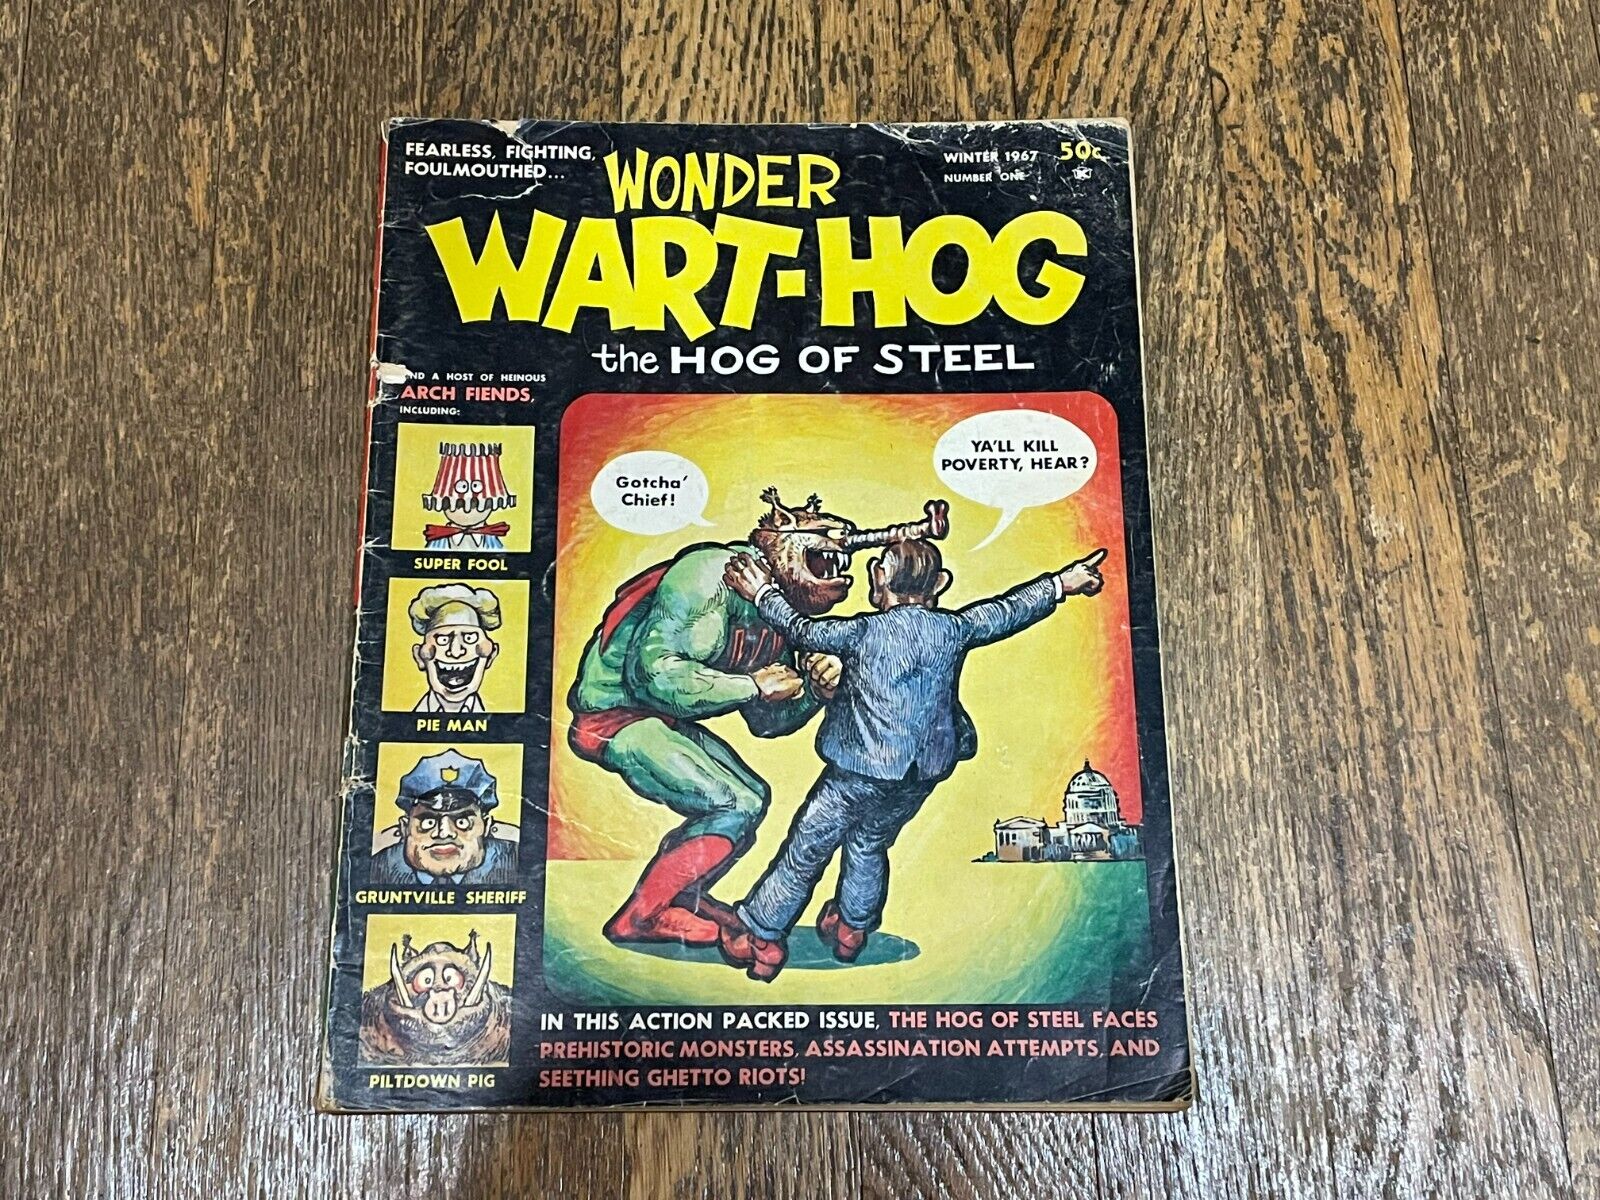 Wonder Wart-Hog Magazine The Hog of Steel First Issue Winter 1967 # 1